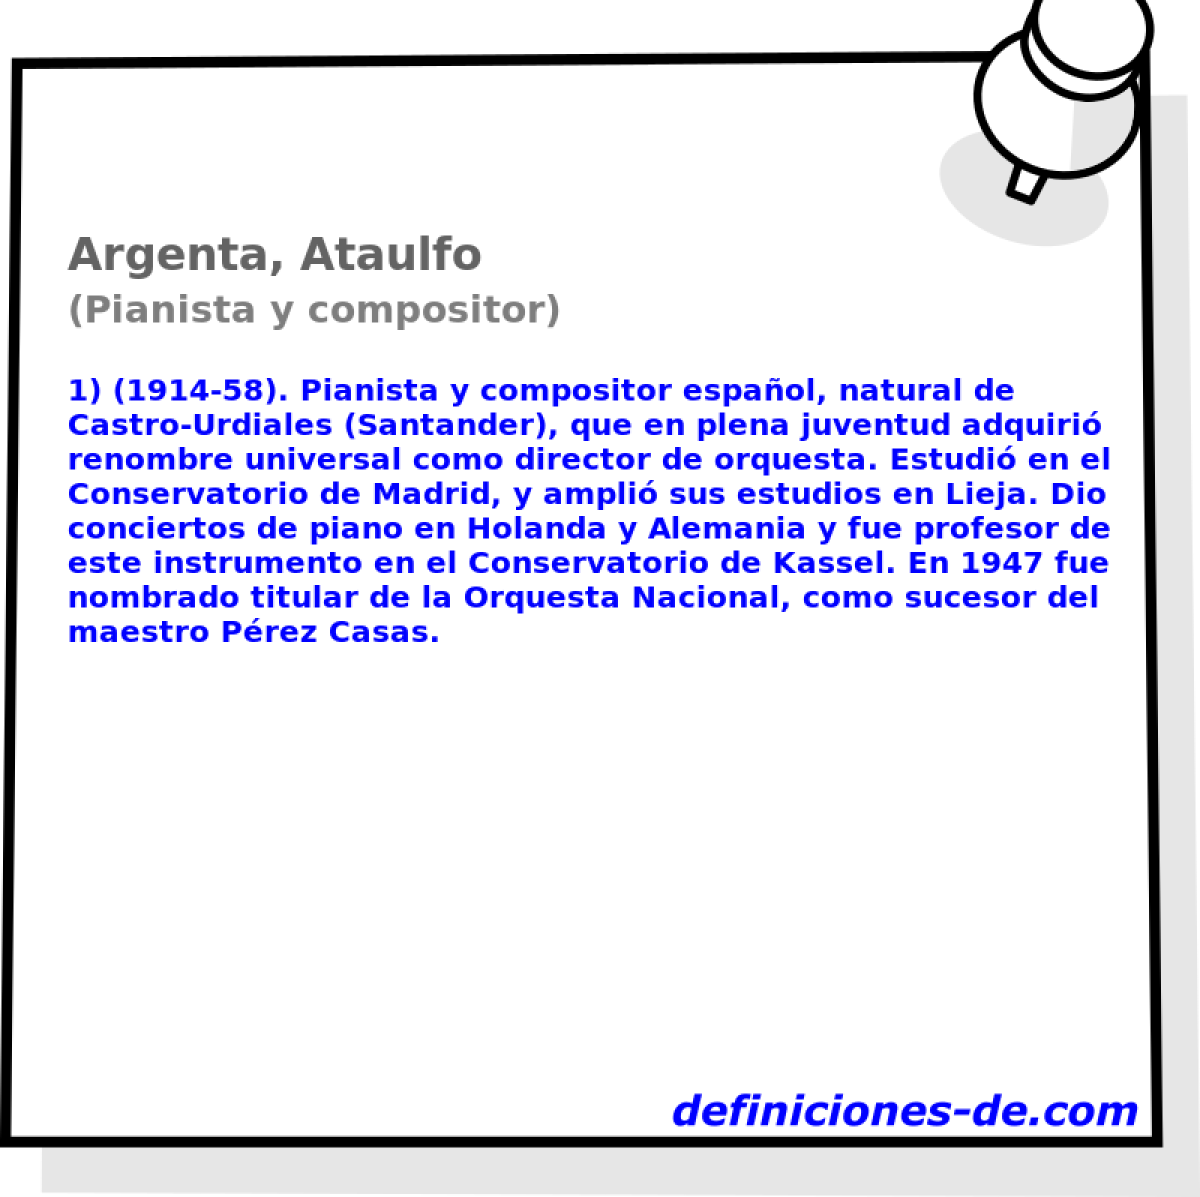 Argenta, Ataulfo (Pianista y compositor)